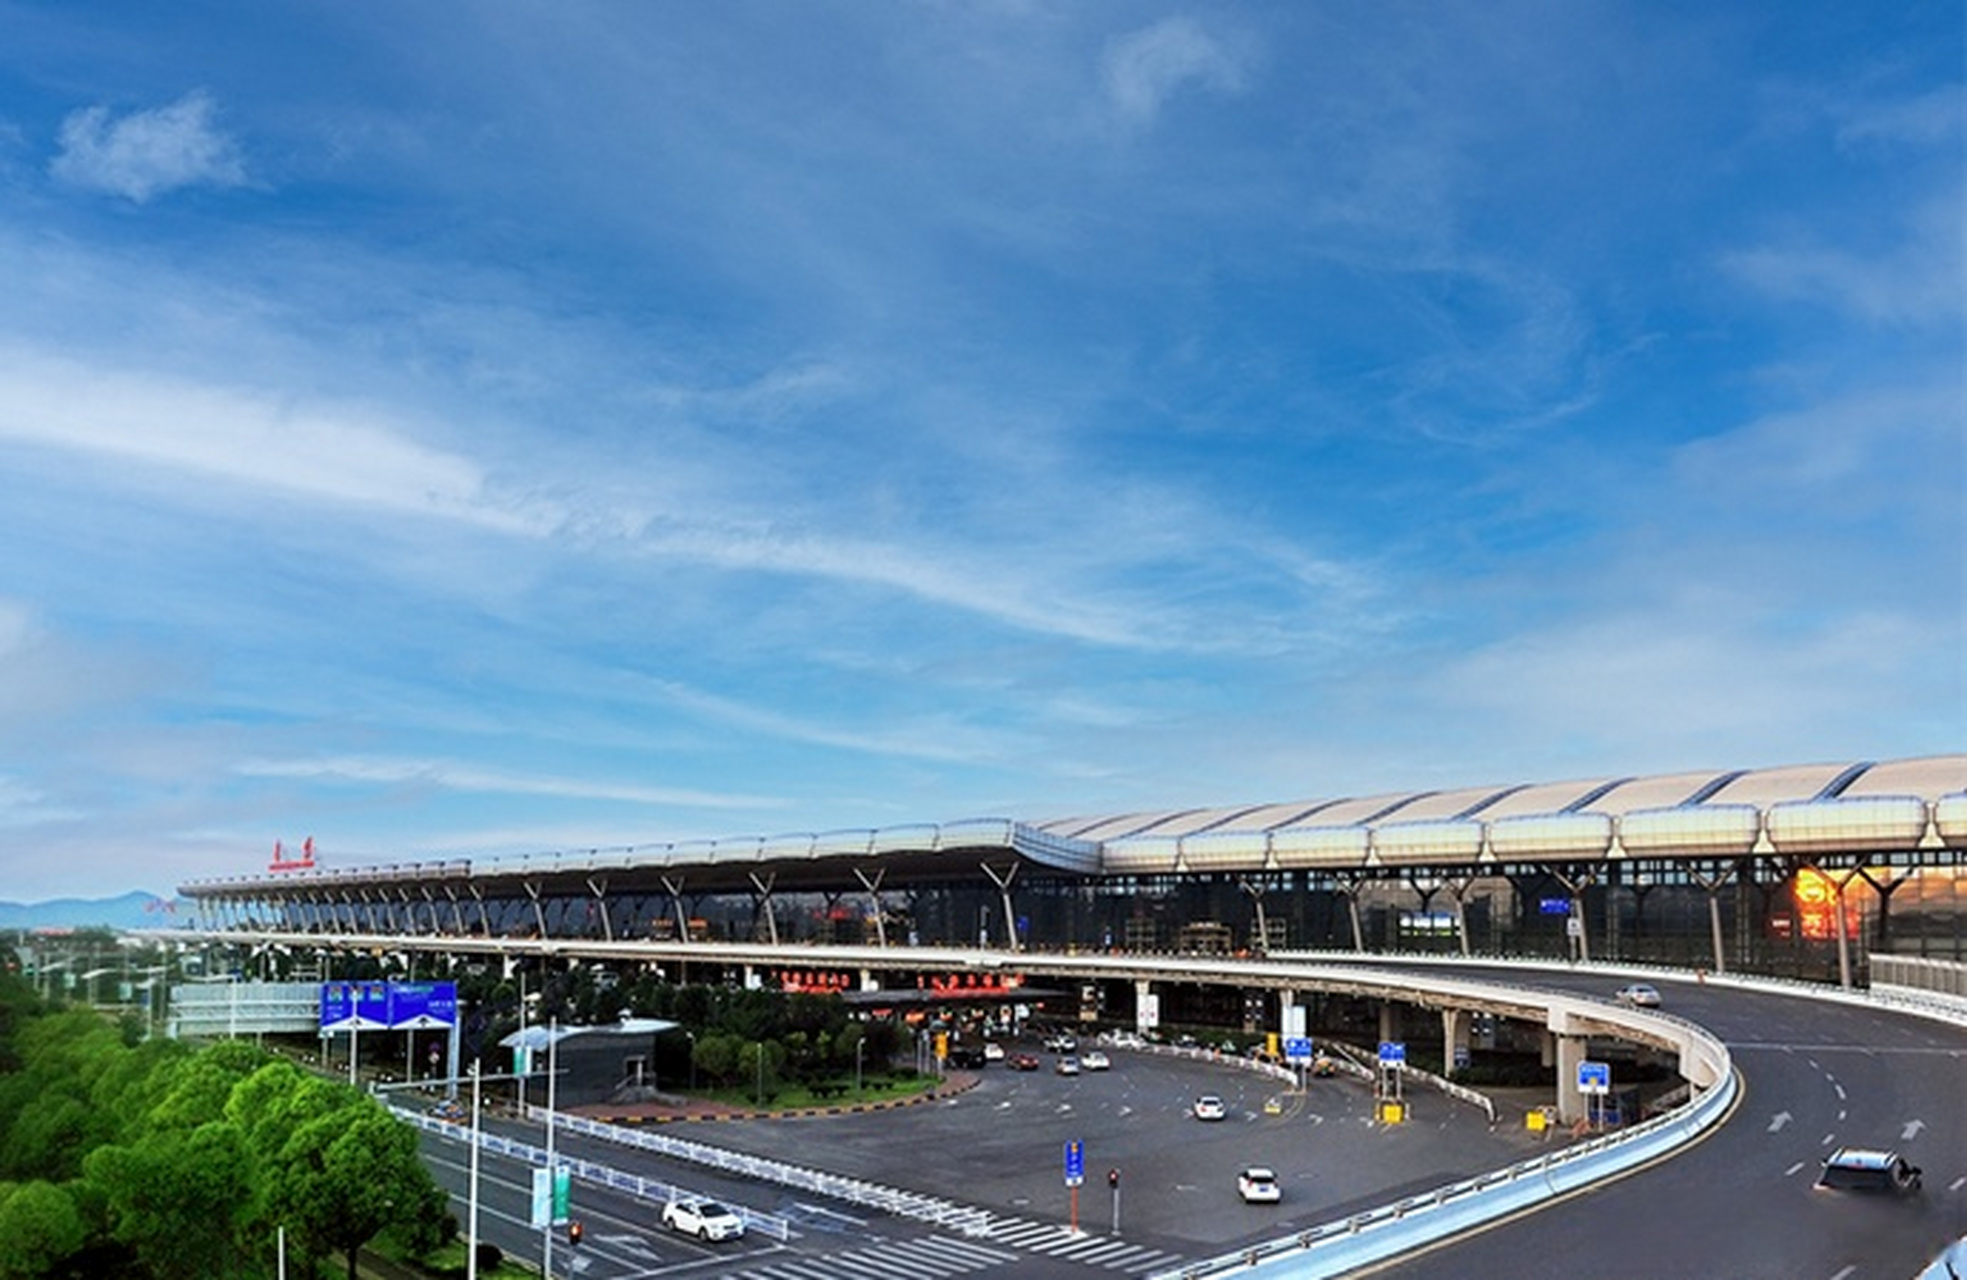 【贵州双龙航空港经济区将申报空港型国家物流枢纽】记者从贵州双龙